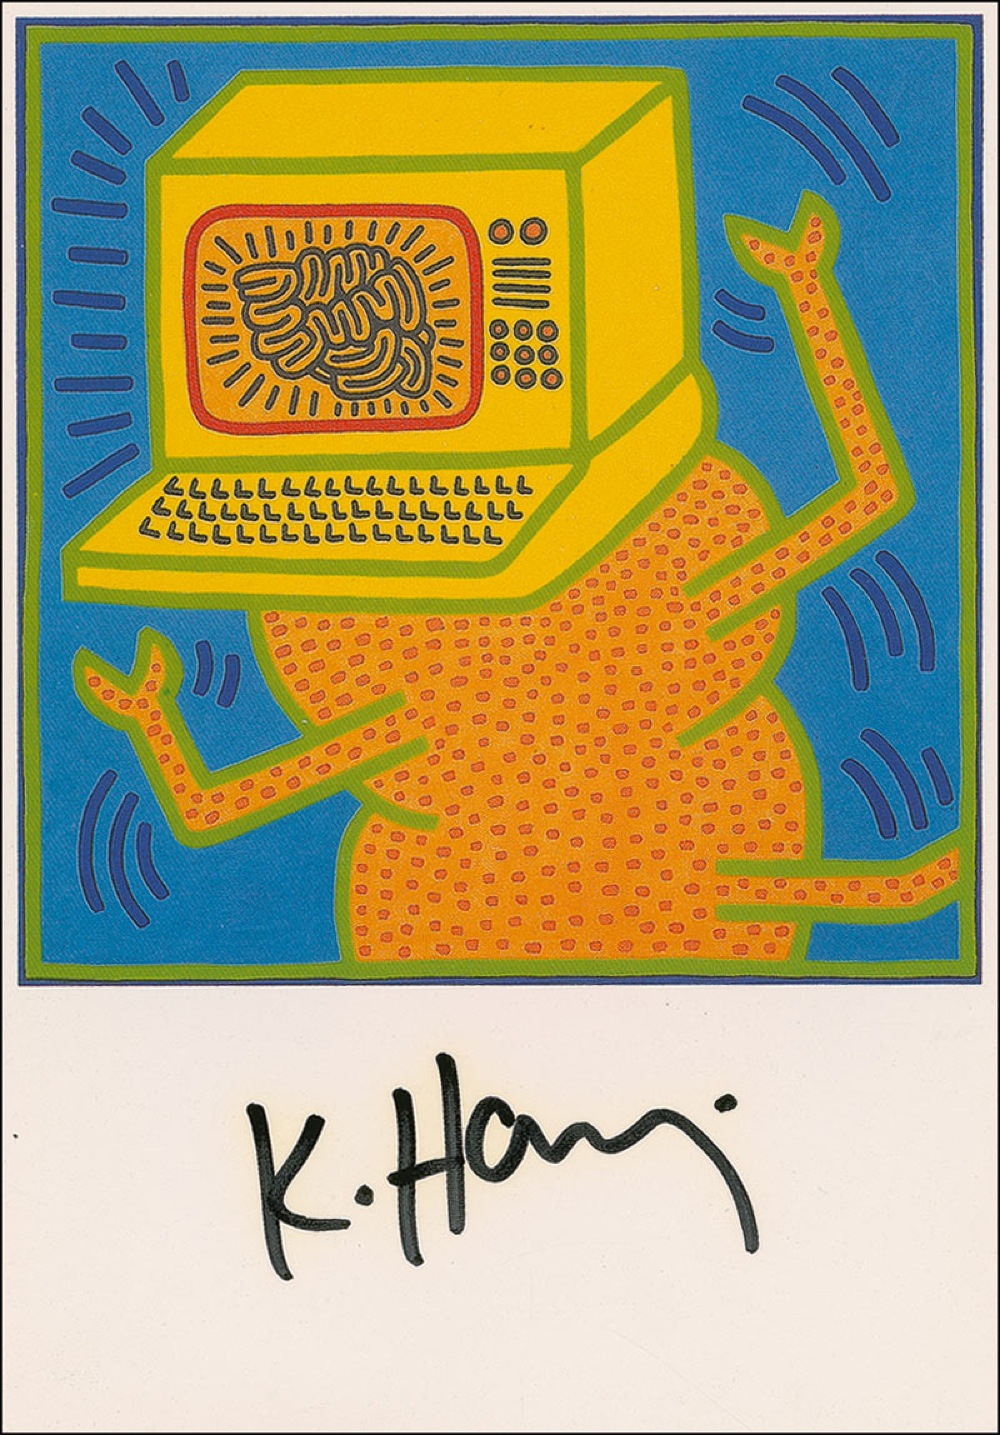 Lot #656 Keith Haring